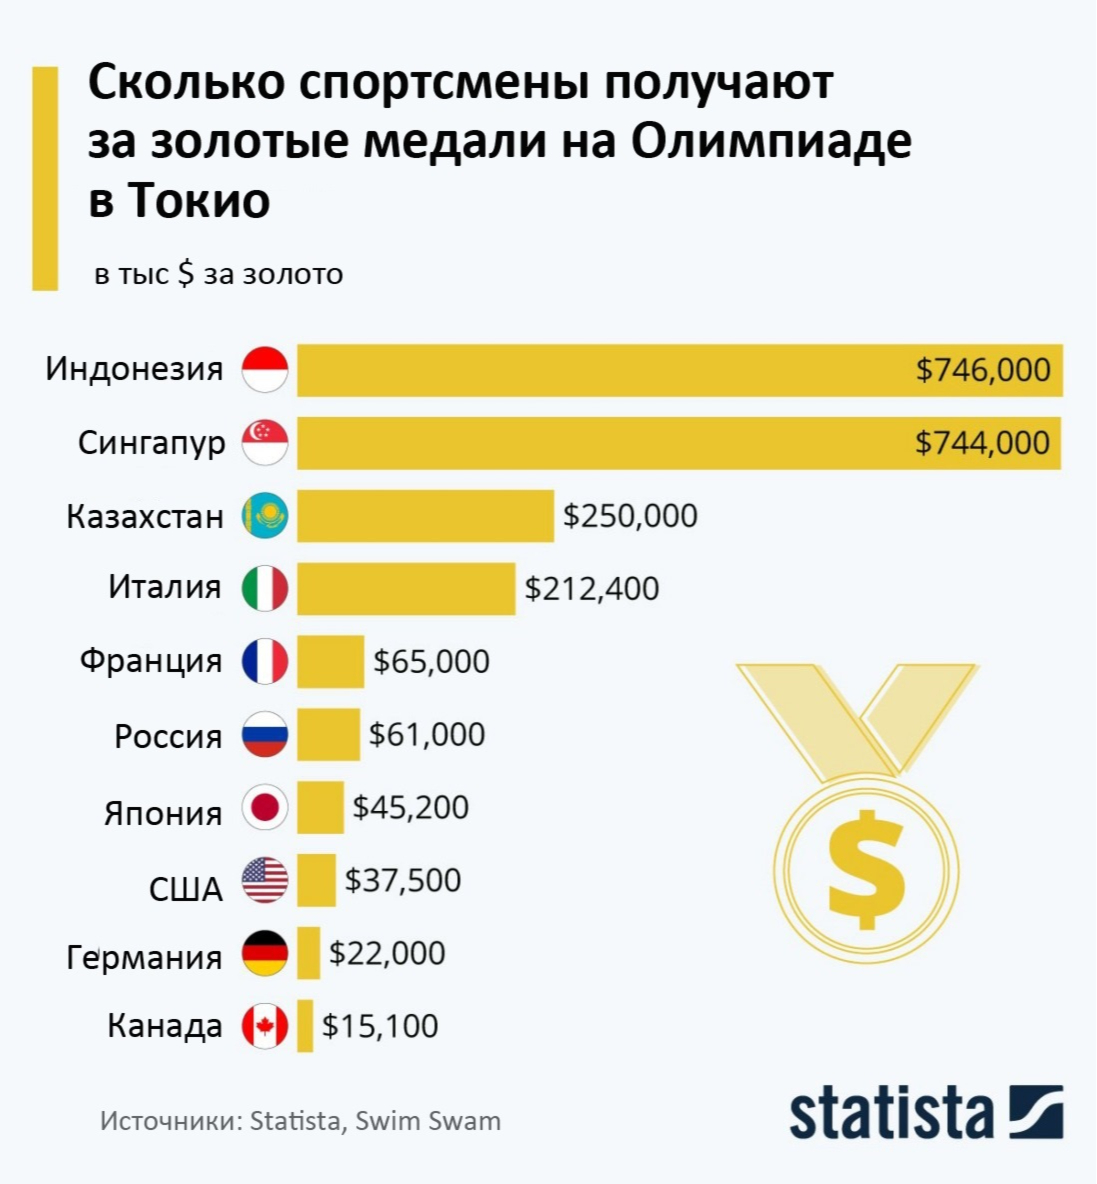 Сколько платят спортсменам. Количество спортсменов. Деньги за золотую медаль на Олимпиаде. Сколько получают спортсмены за золотую медаль на Олимпиаде. Страны по количеству Олимпийские медали по золоту.